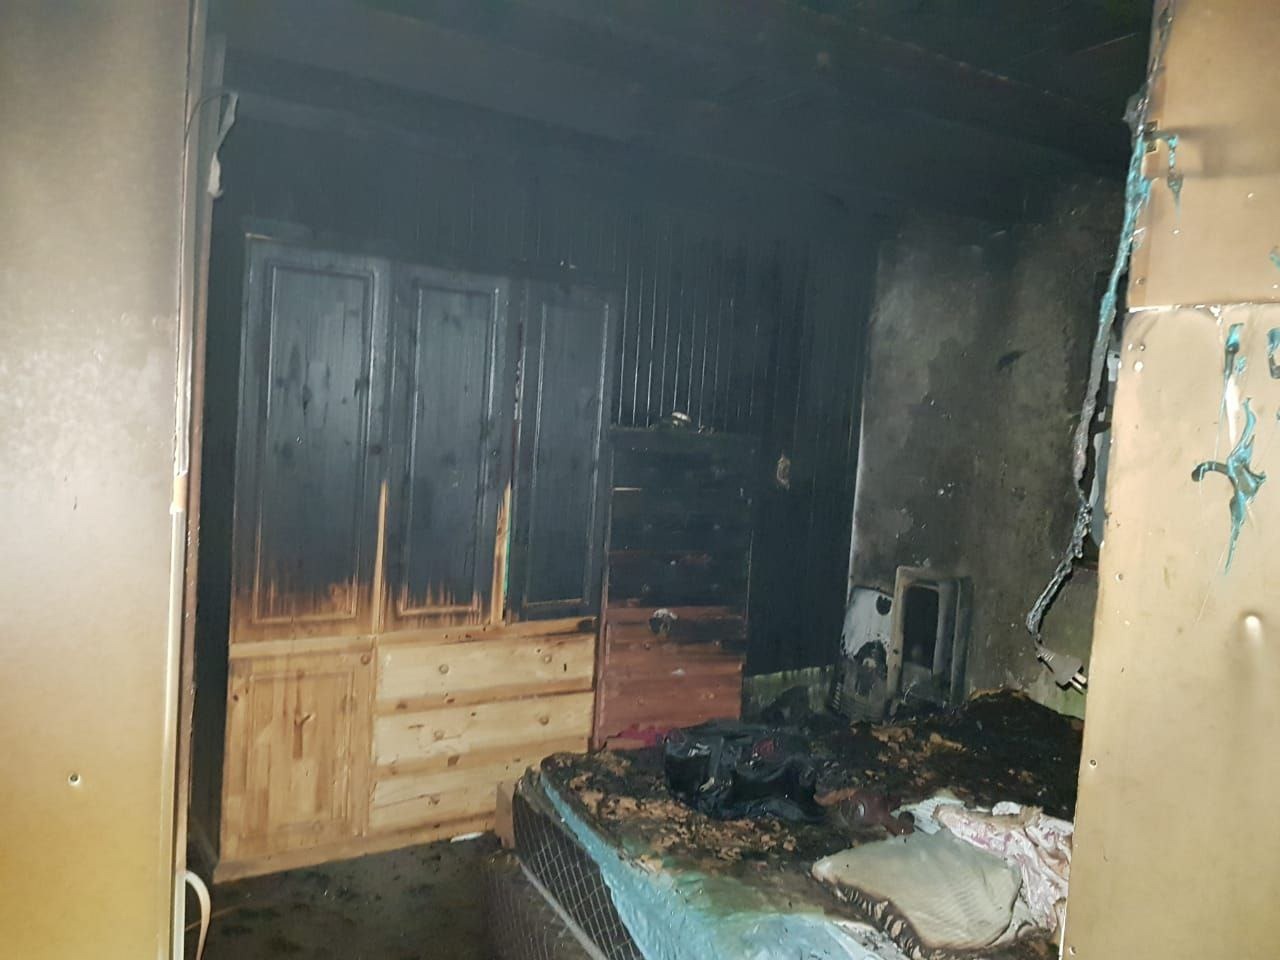 Caleta Olivia: Incendio accidental en vivienda causa daños materiales